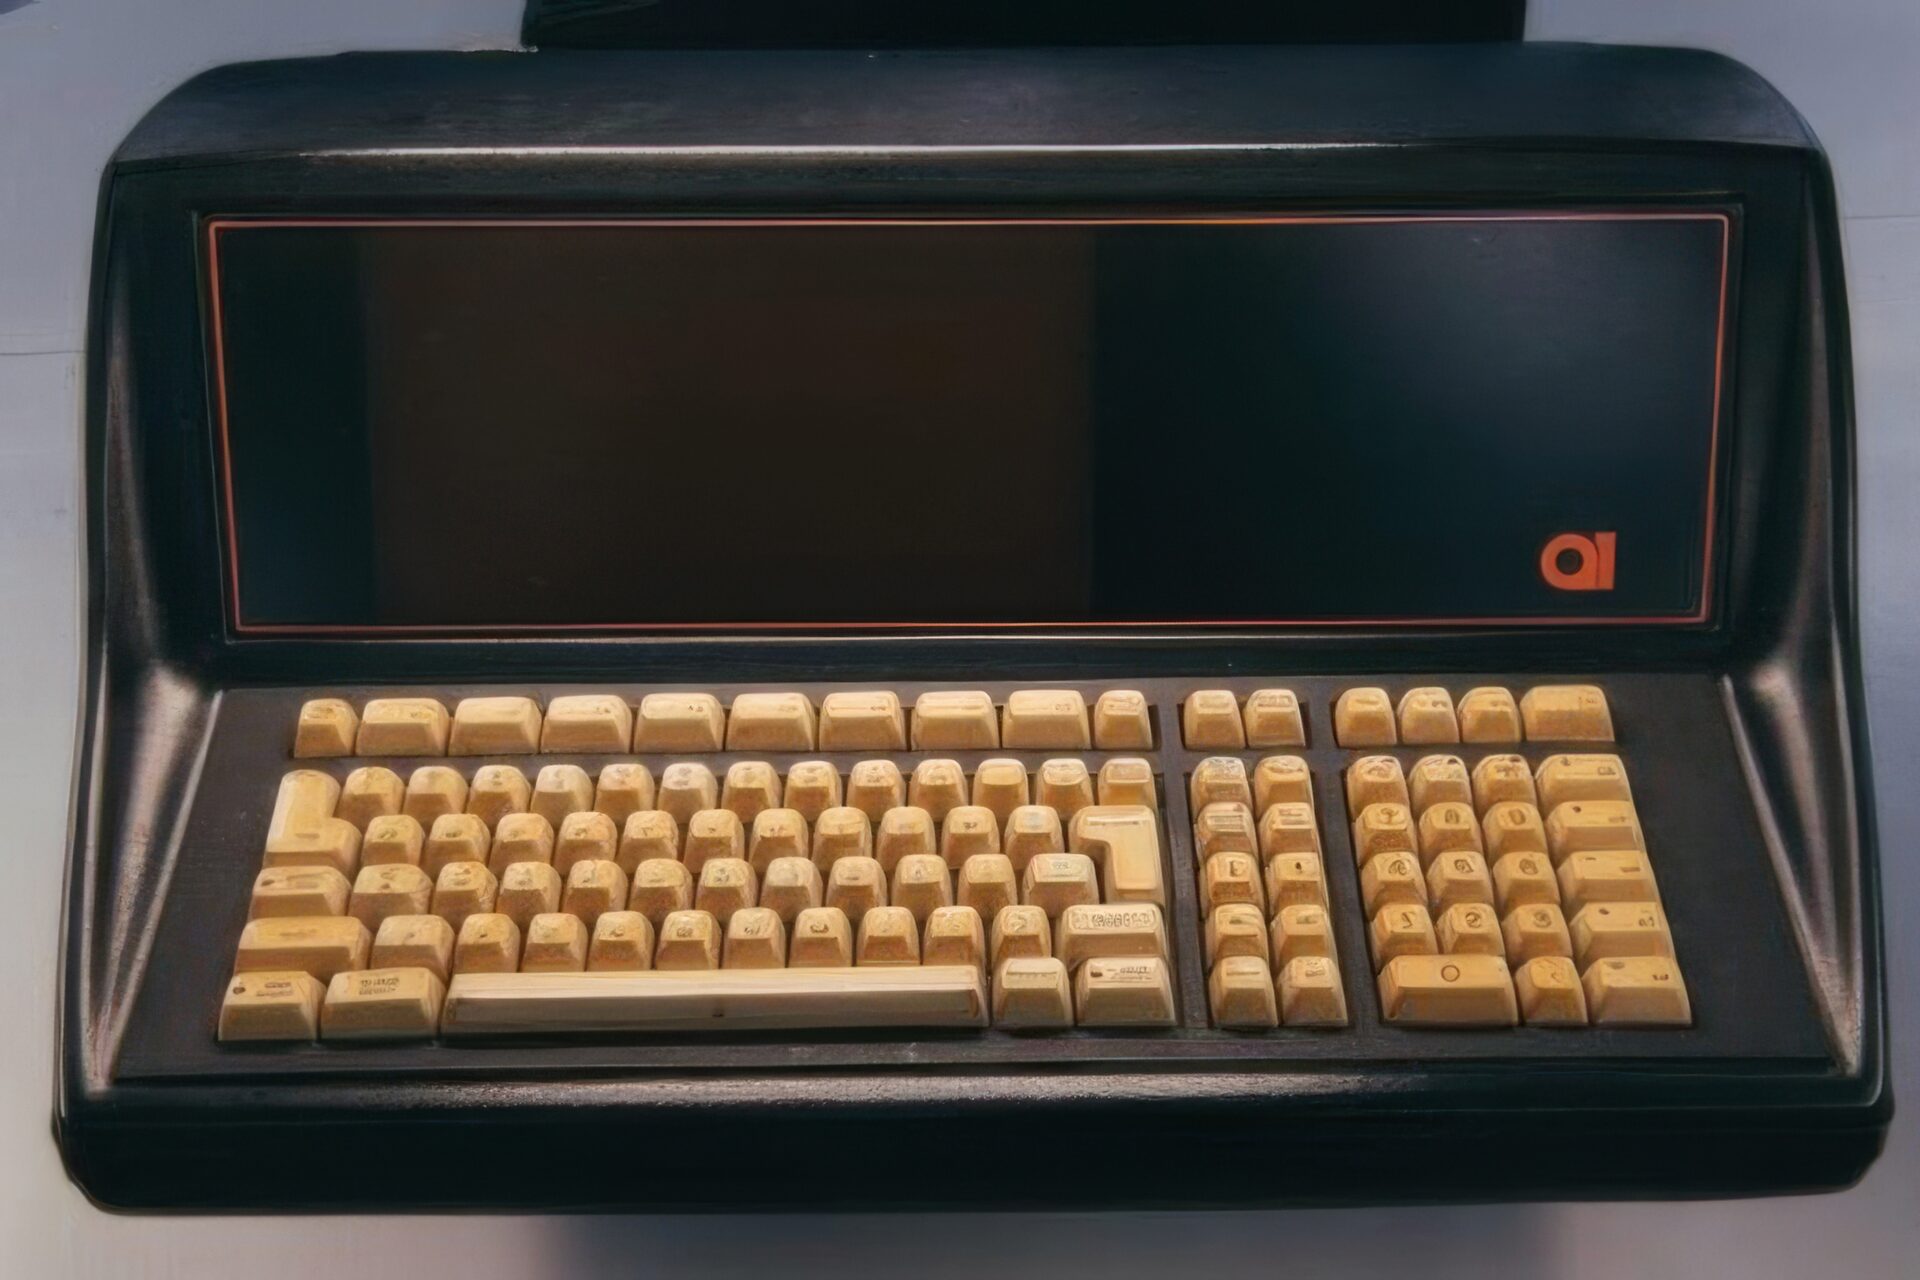 Sensationellt fynd av världens första PC